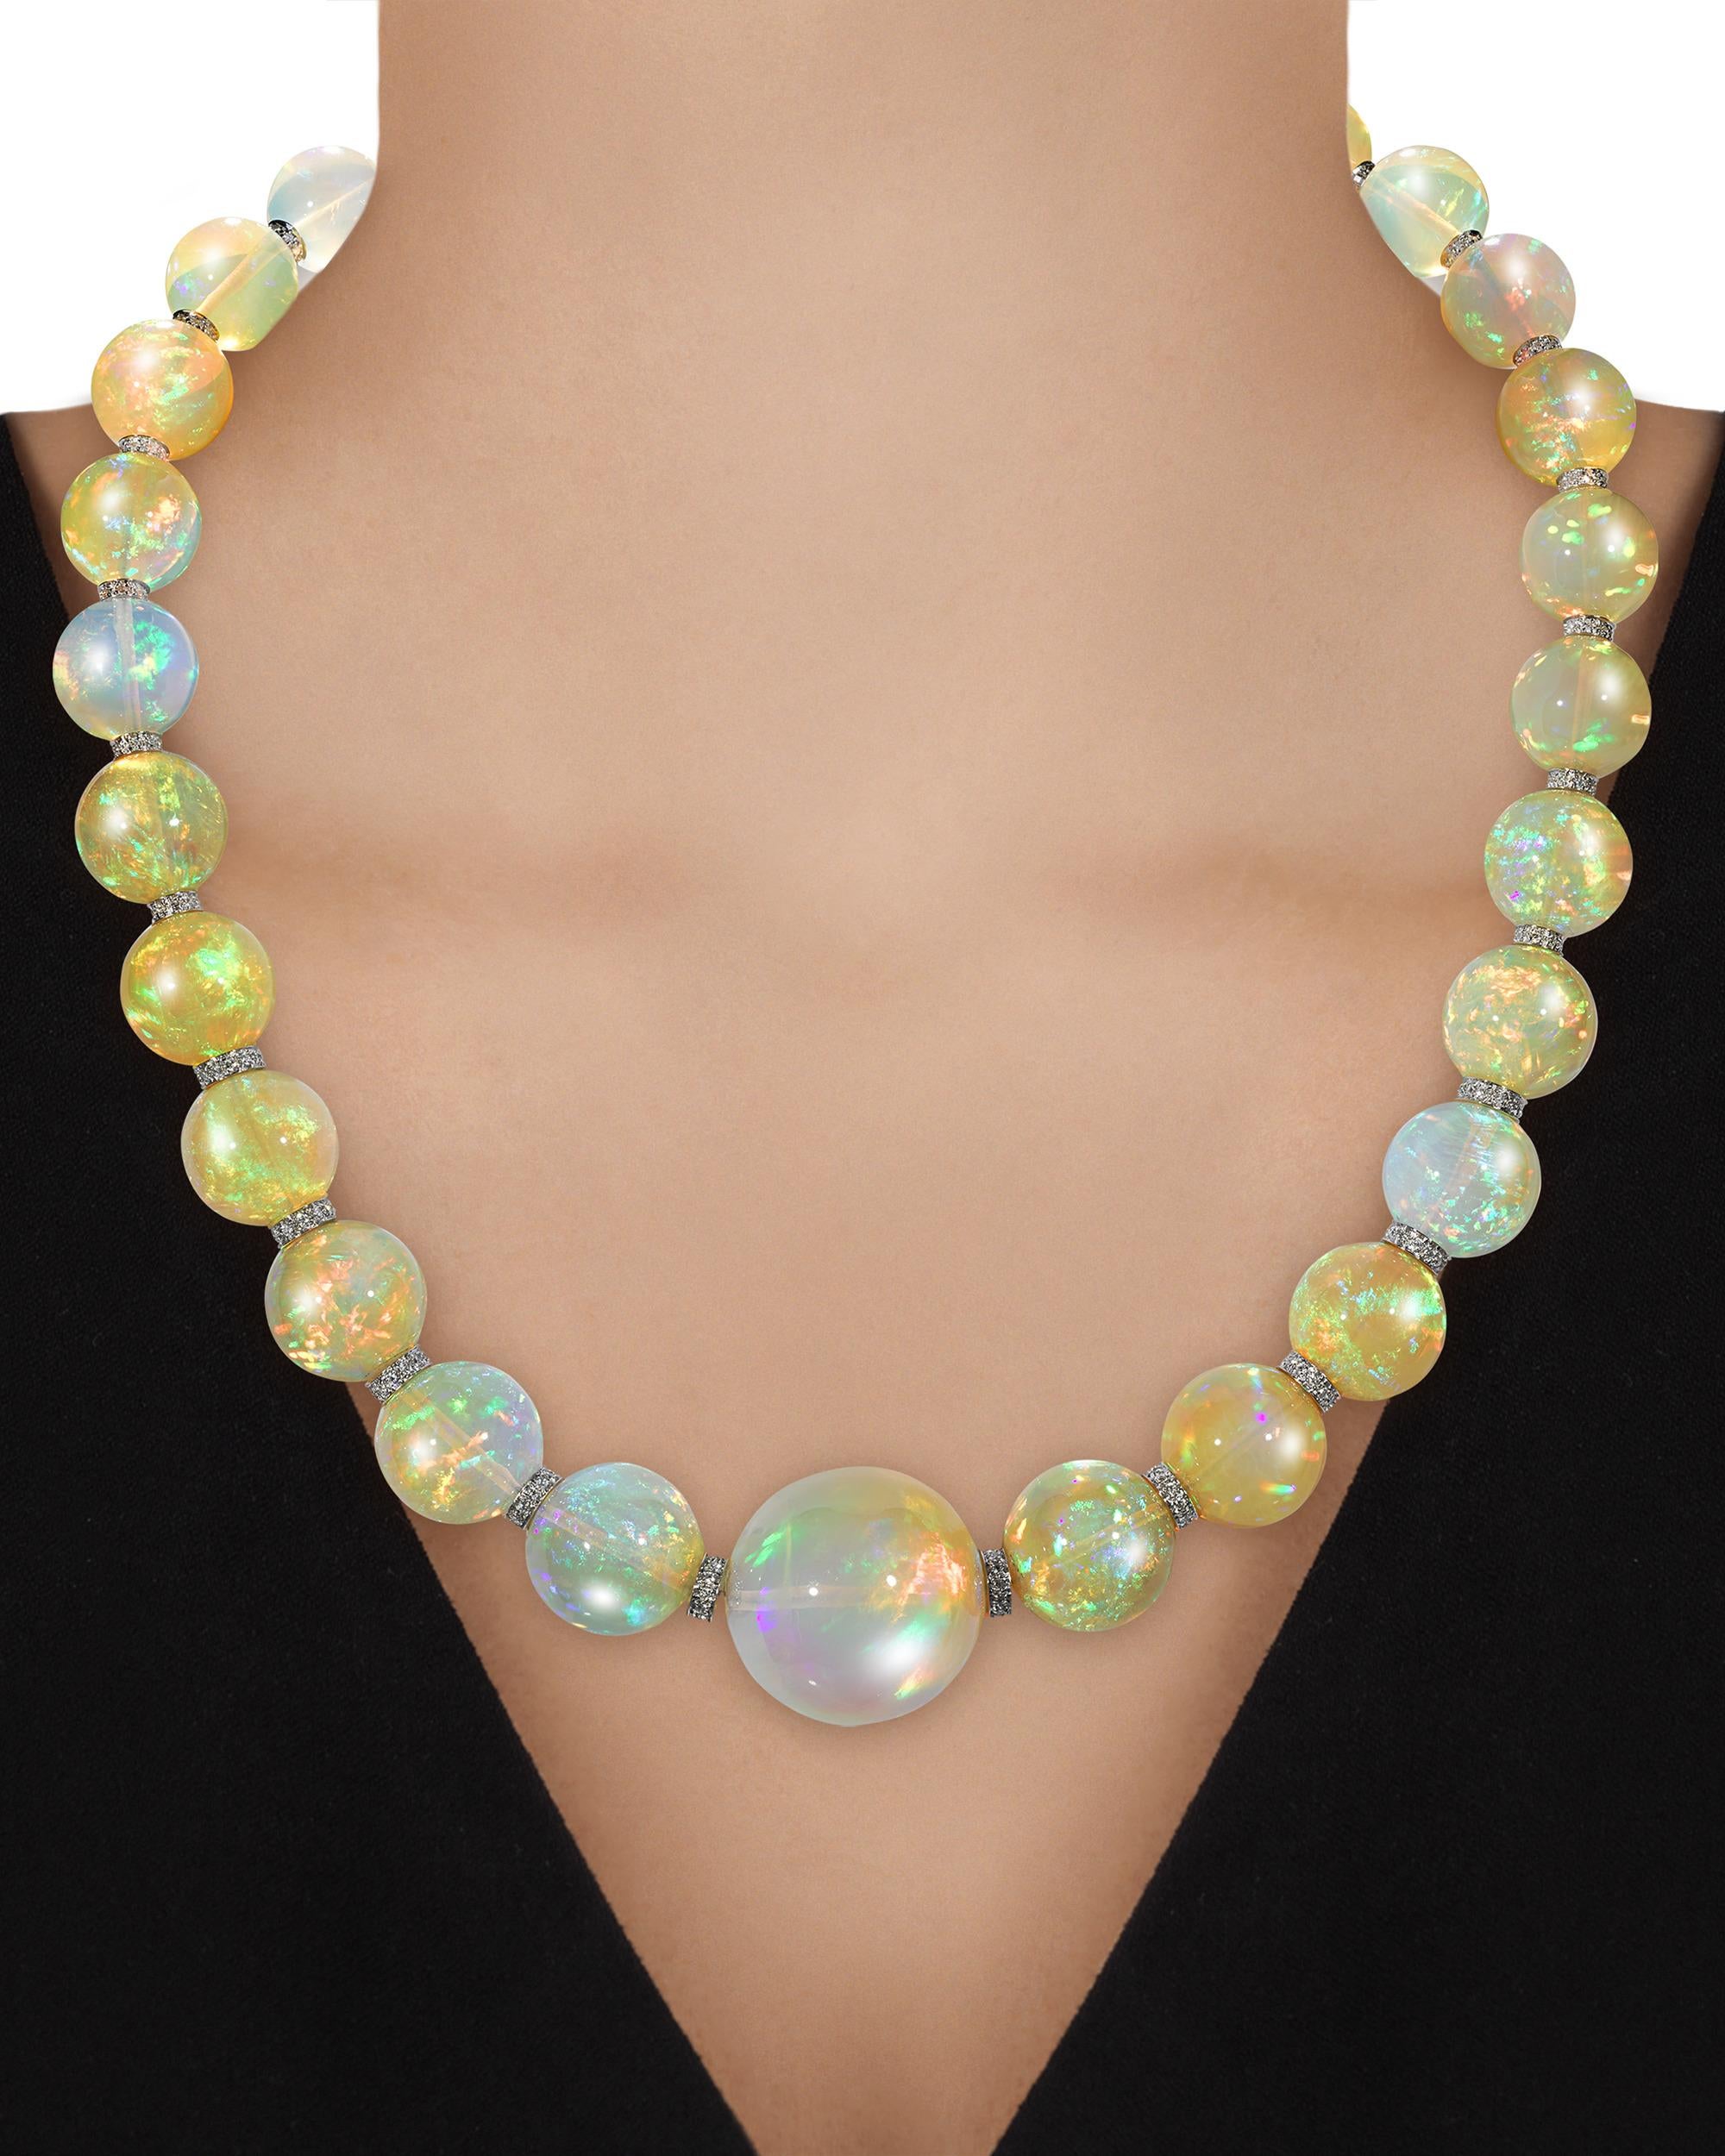 Vingt-neuf perles d'opale massive totalisant un extraordinaire 554,00 carats composent ce collier envoûtant. Les gemmes graduées sont d'une taille impressionnante, mesurant de 23,8 mm à 13 mm, chacune présentant un haut niveau de translucidité et un